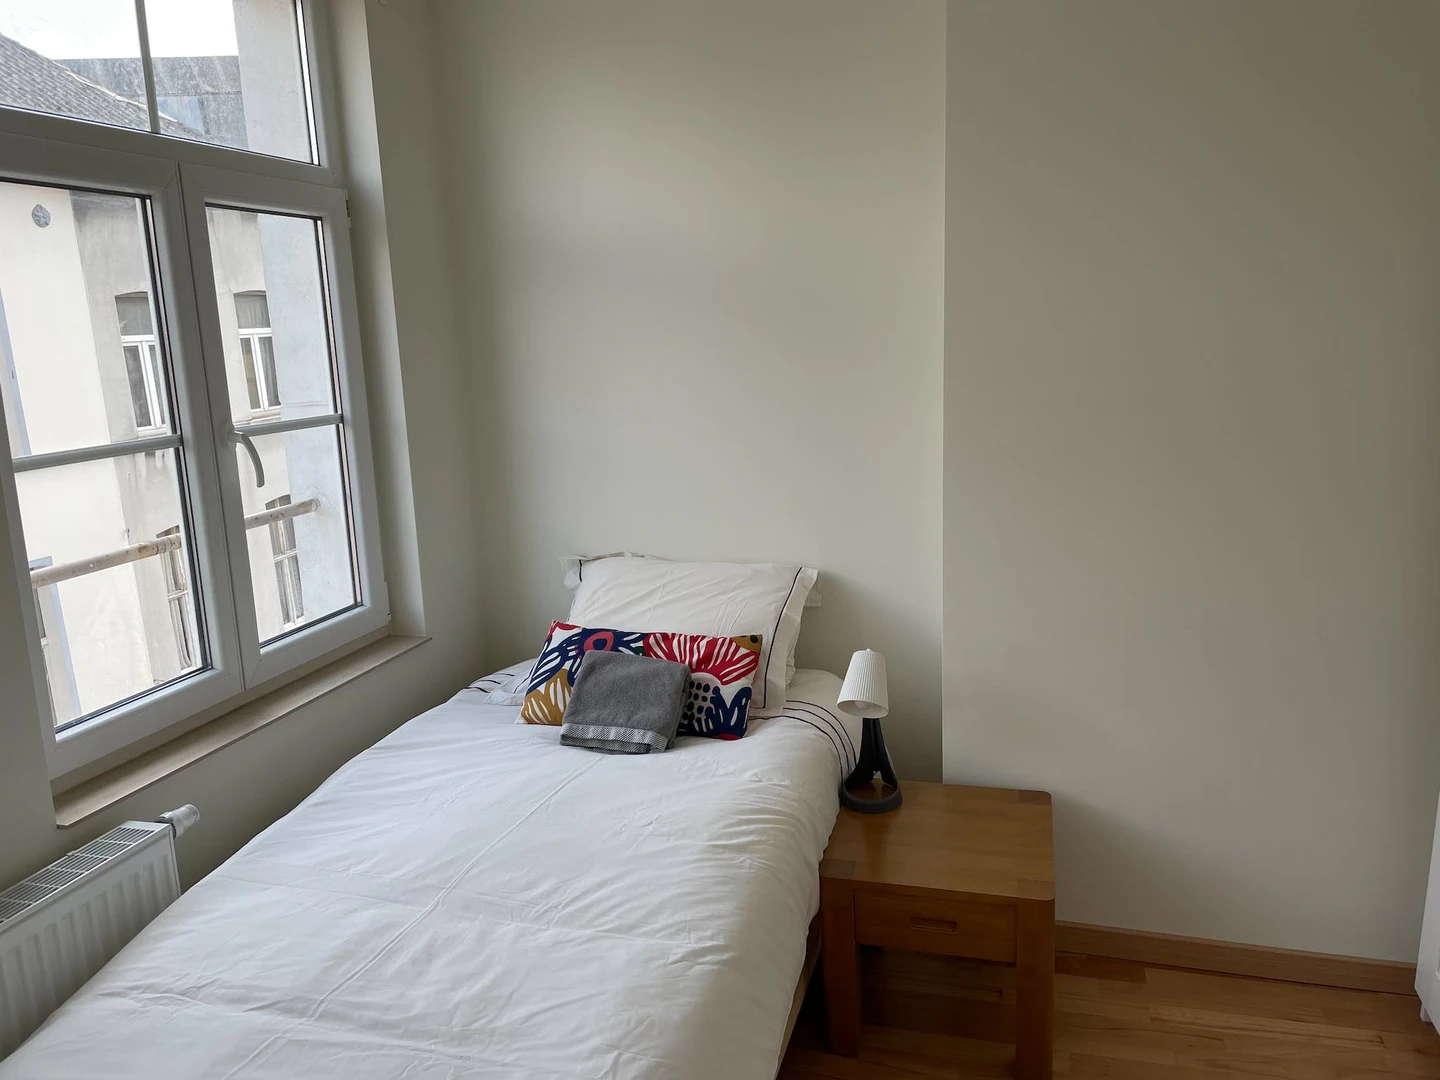 Monatliche Vermietung von Zimmern in Brüssel/brüssel